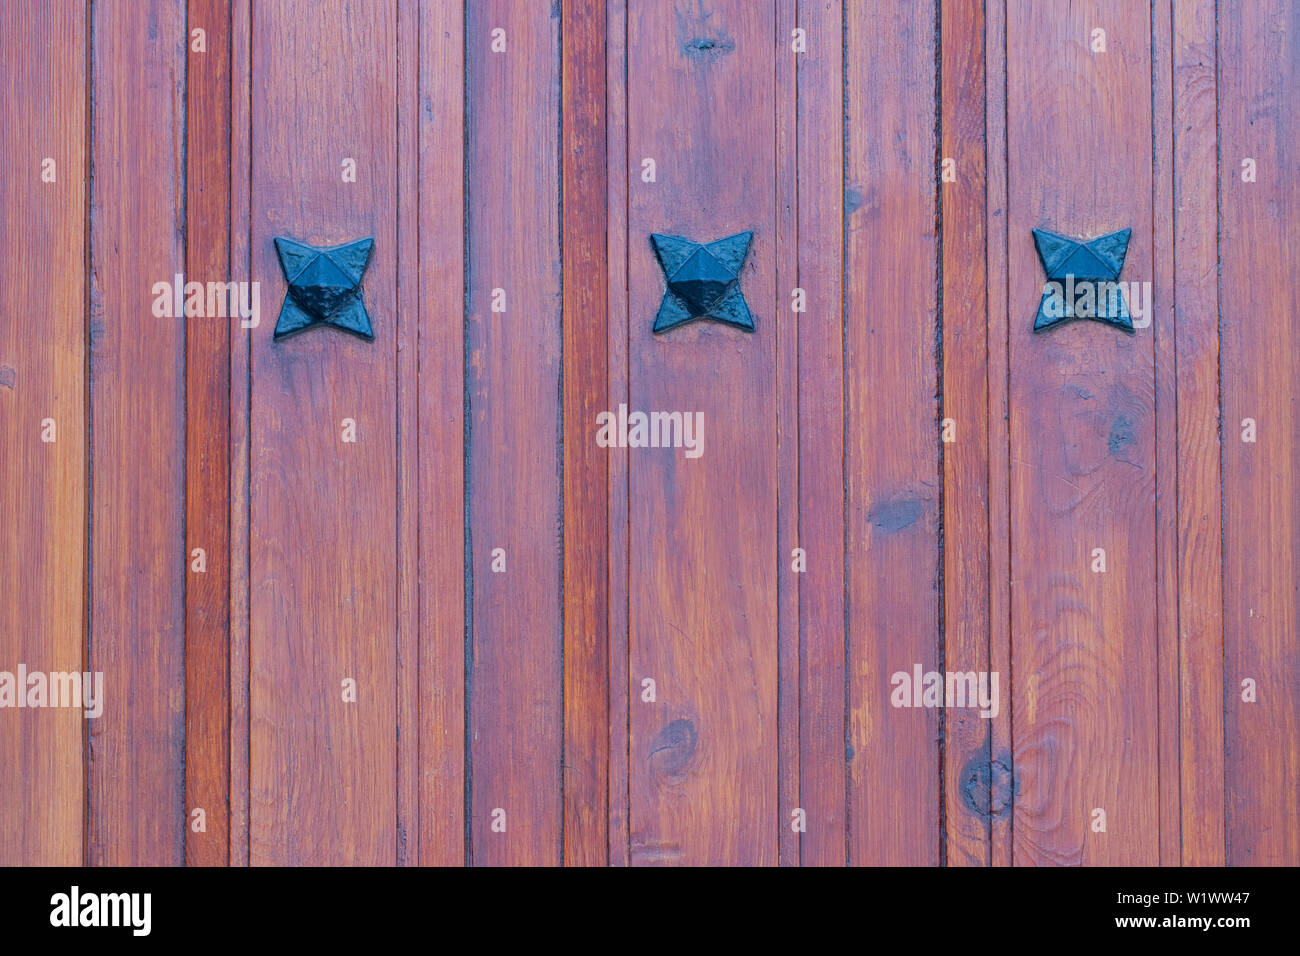 Holz Textur Hintergrund. Nahaufnahme eines Details aus Holz rot braun Eingangstür mit drei Metall Sterne auf der hölzernen Planken. Makro. Stockfoto